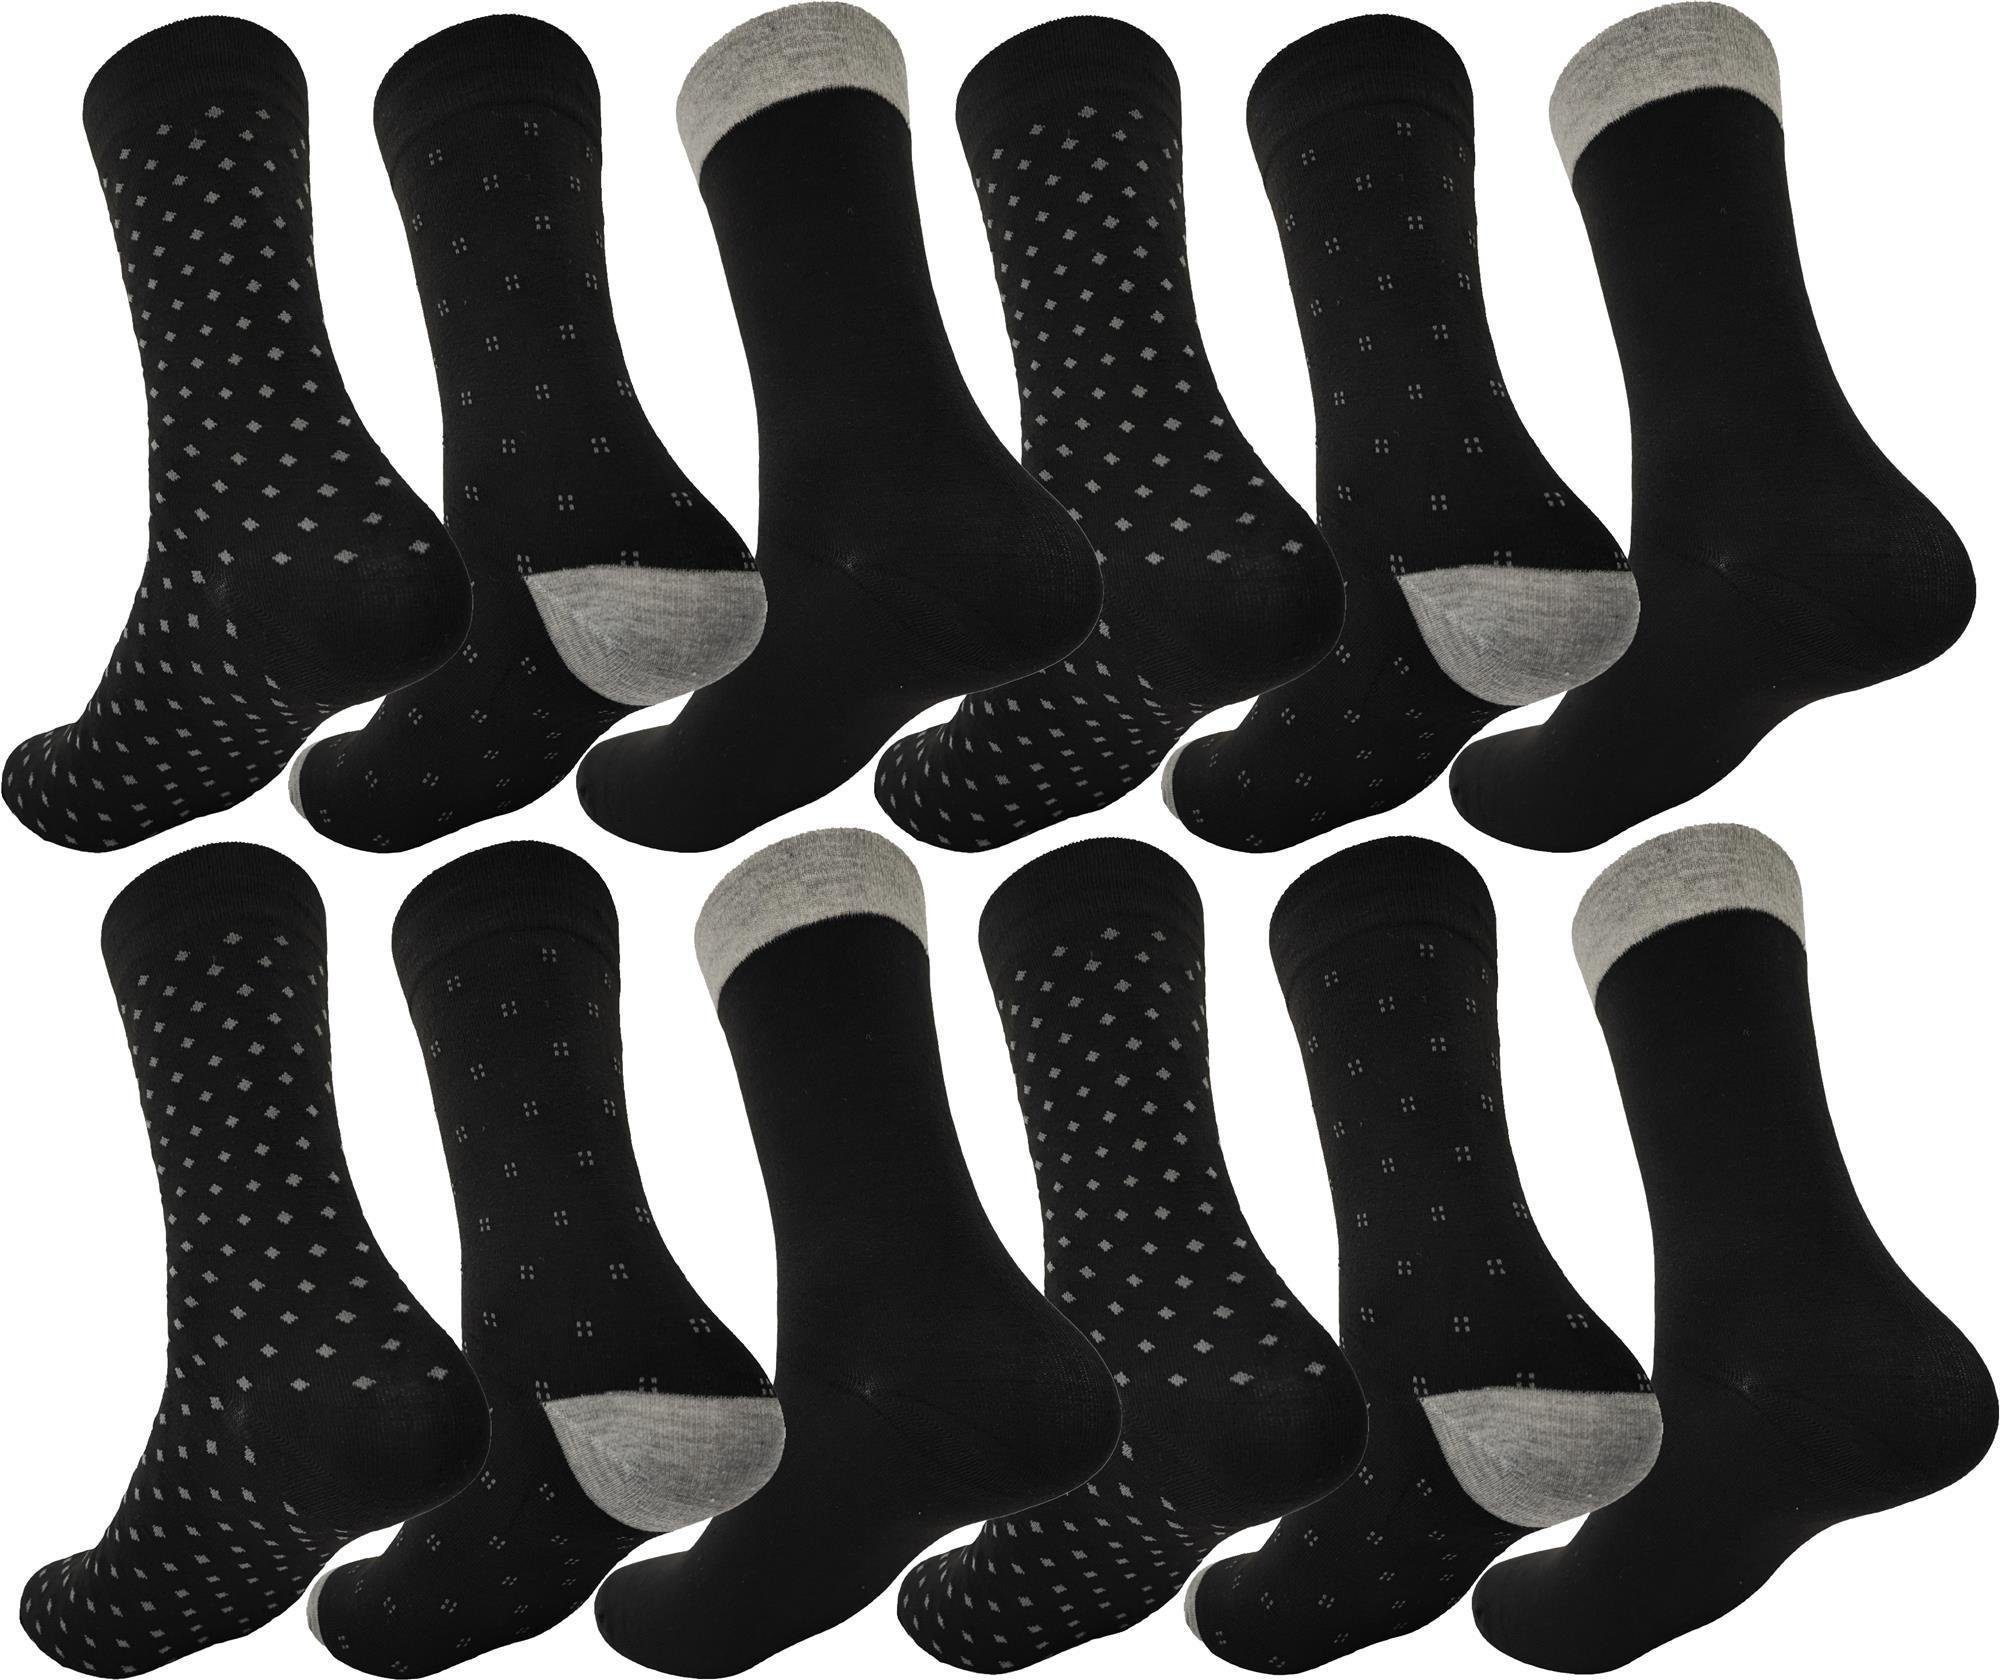 EloModa Basicsocken 12 Paar Herren Socken Muster klassischer Form Freizeit Sport (12-Paar) Mix3